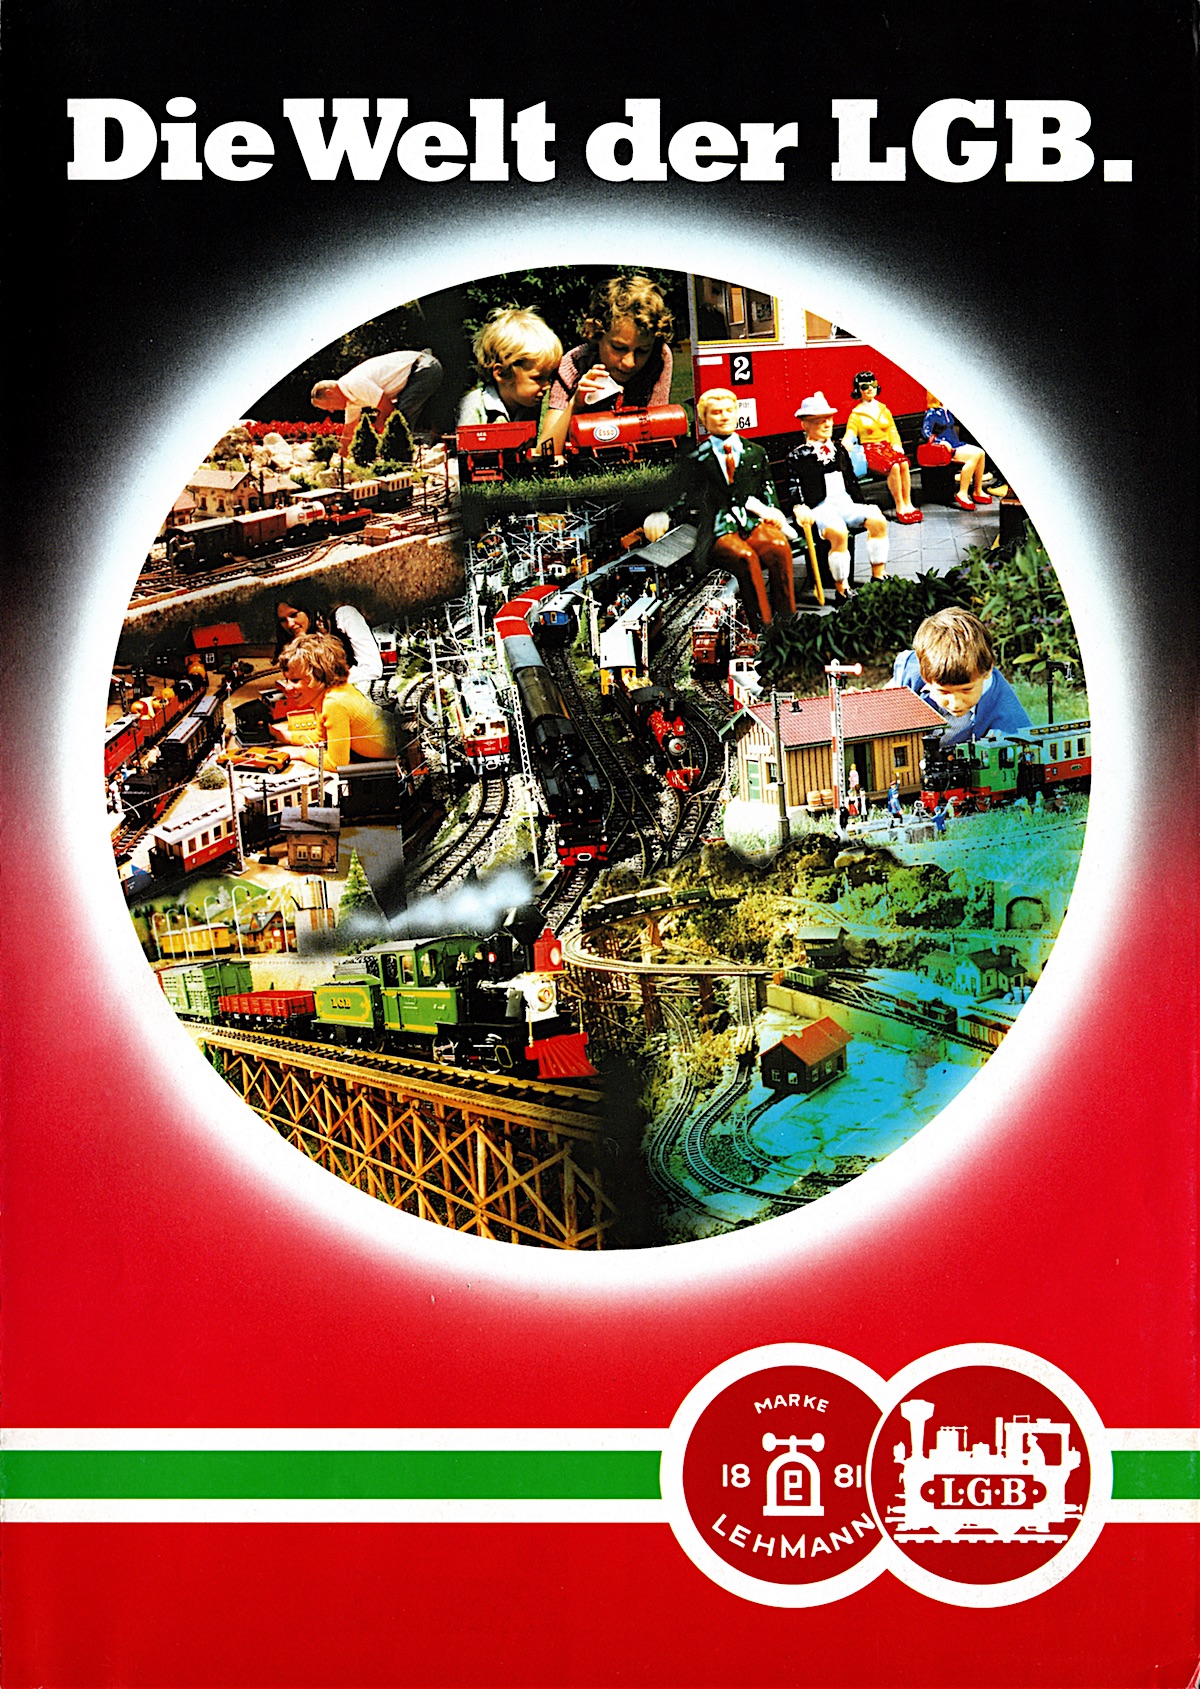 LGB Broschüre (Flyer) 1986 - Die Welt der LGB